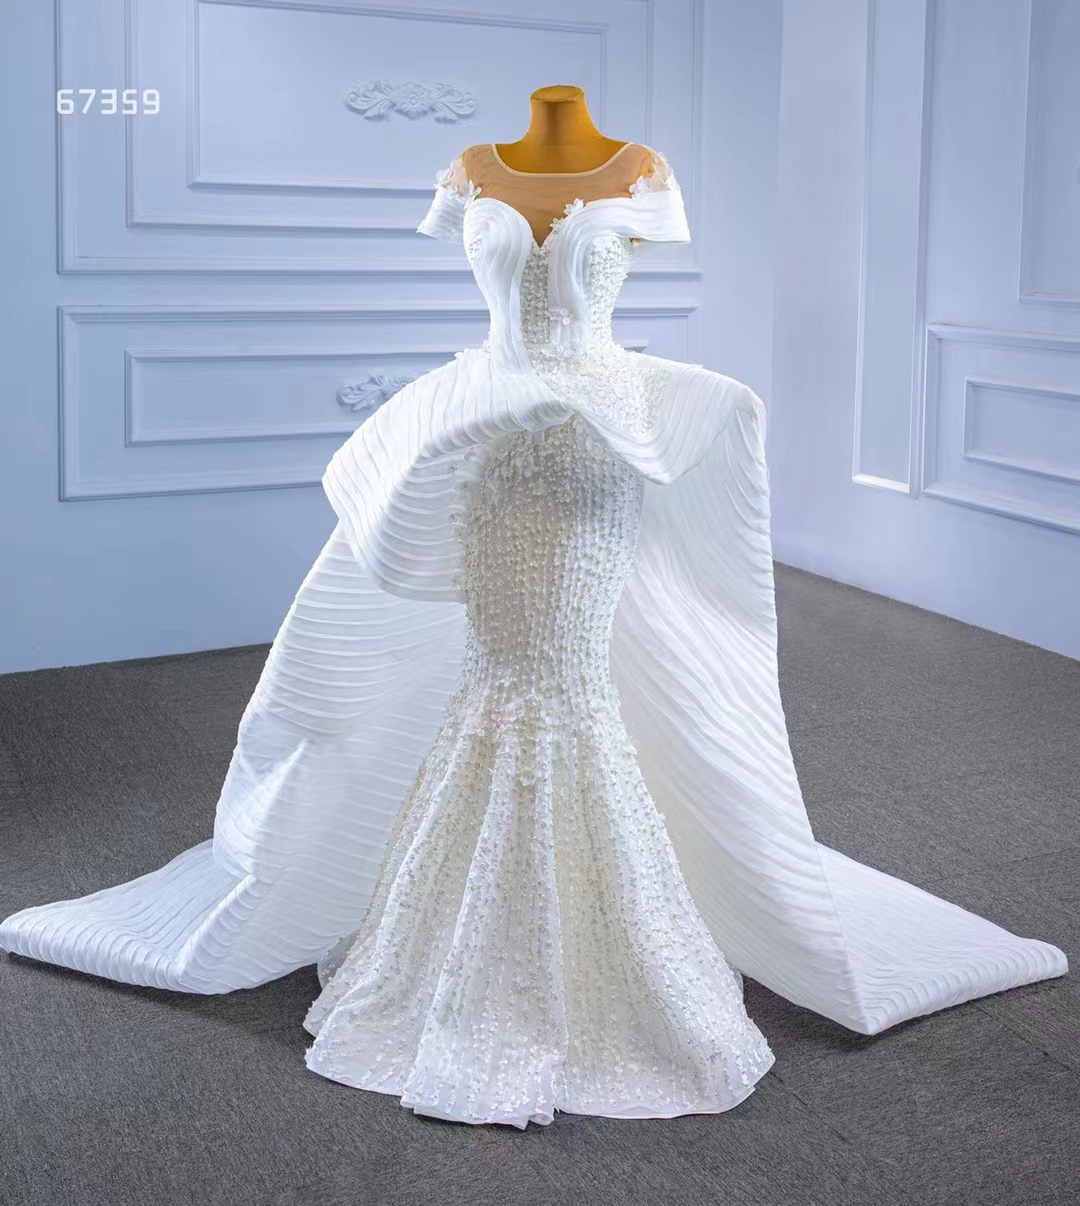 Herzförmiges Brautkleid im trendigen Design, luxuriöse, schwere Perlenspitze, Weiß, SM67359